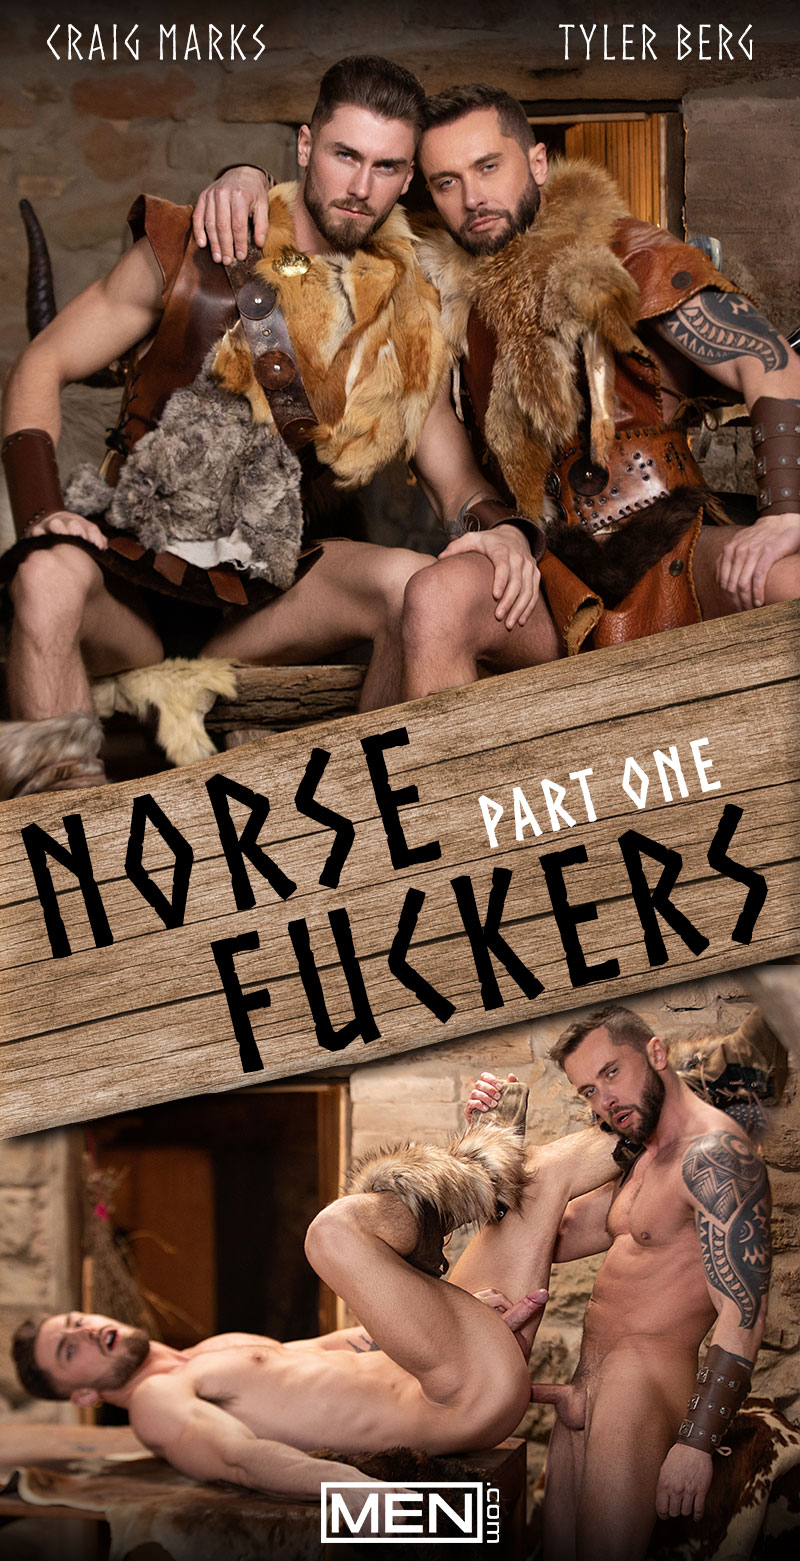 Norse Men Porn - Men.com: Norse Fuckers, Part 1 (Tyler Berg & Craig Marks) | Fagalicious - Gay  Porn Blog